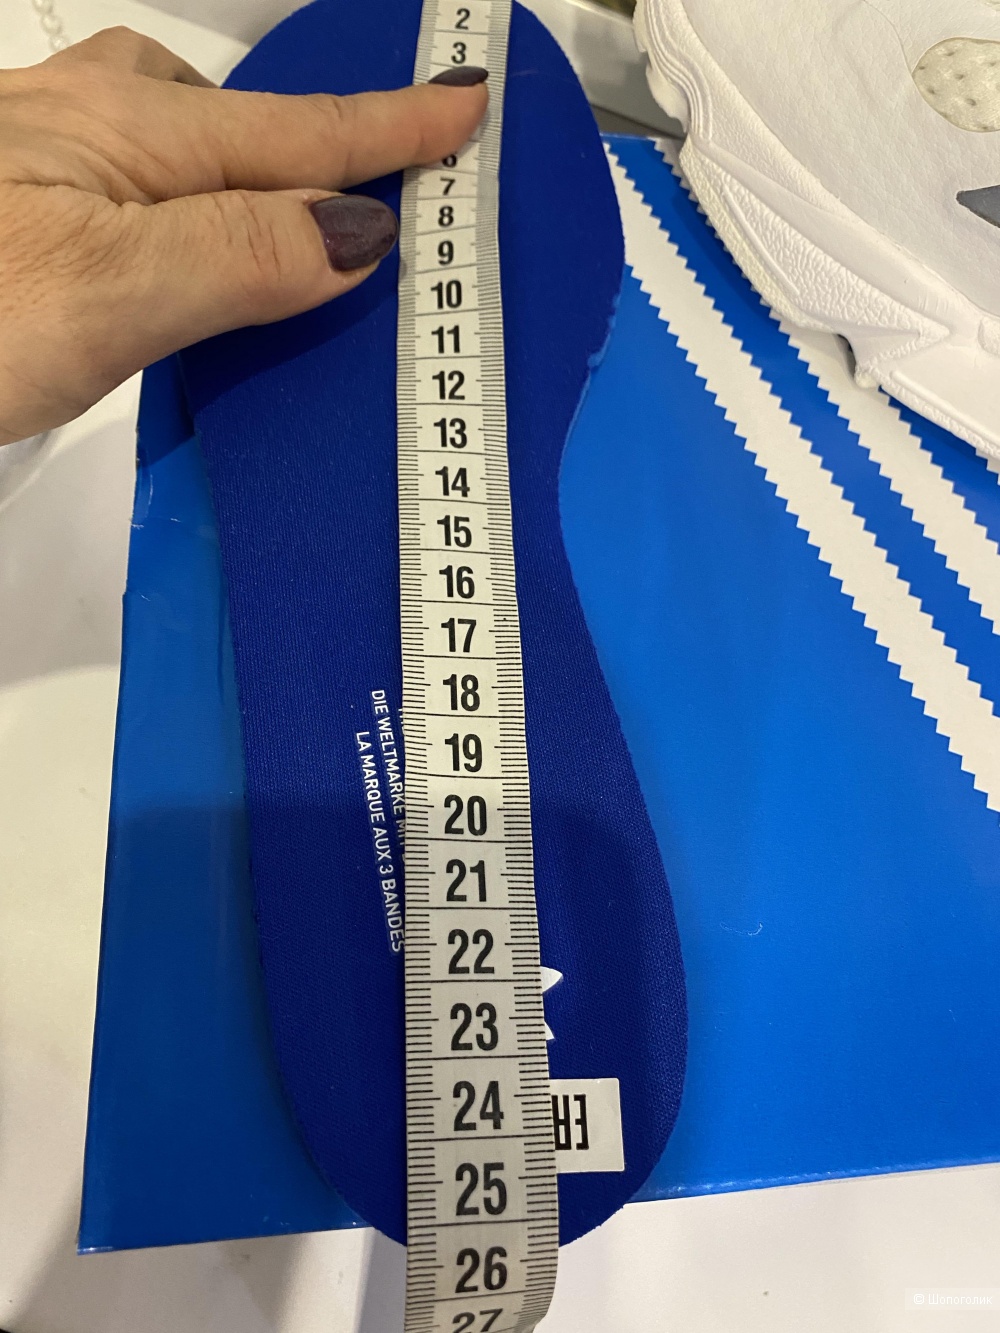 Кроссовки Adidas Originals Falcon W, размер 8US/6,5UK/38,5EUR. По стельке 25 см